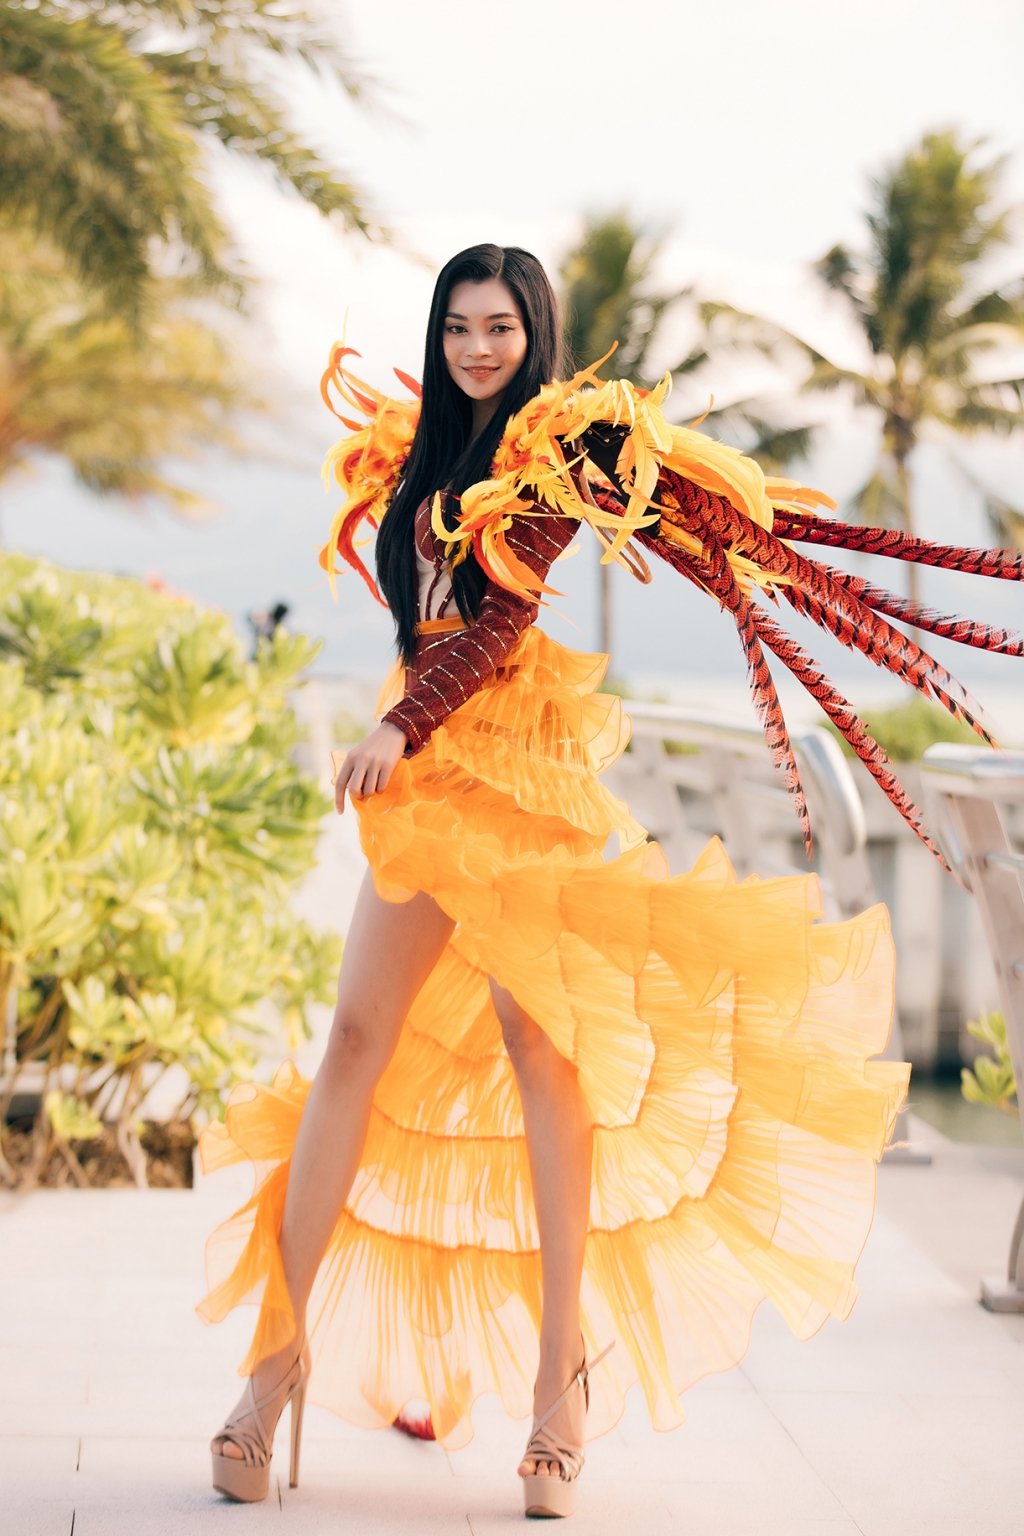 'Miss World Vietnam' khai màn mùa lễ hội với hoạt động diễu hành đường phố